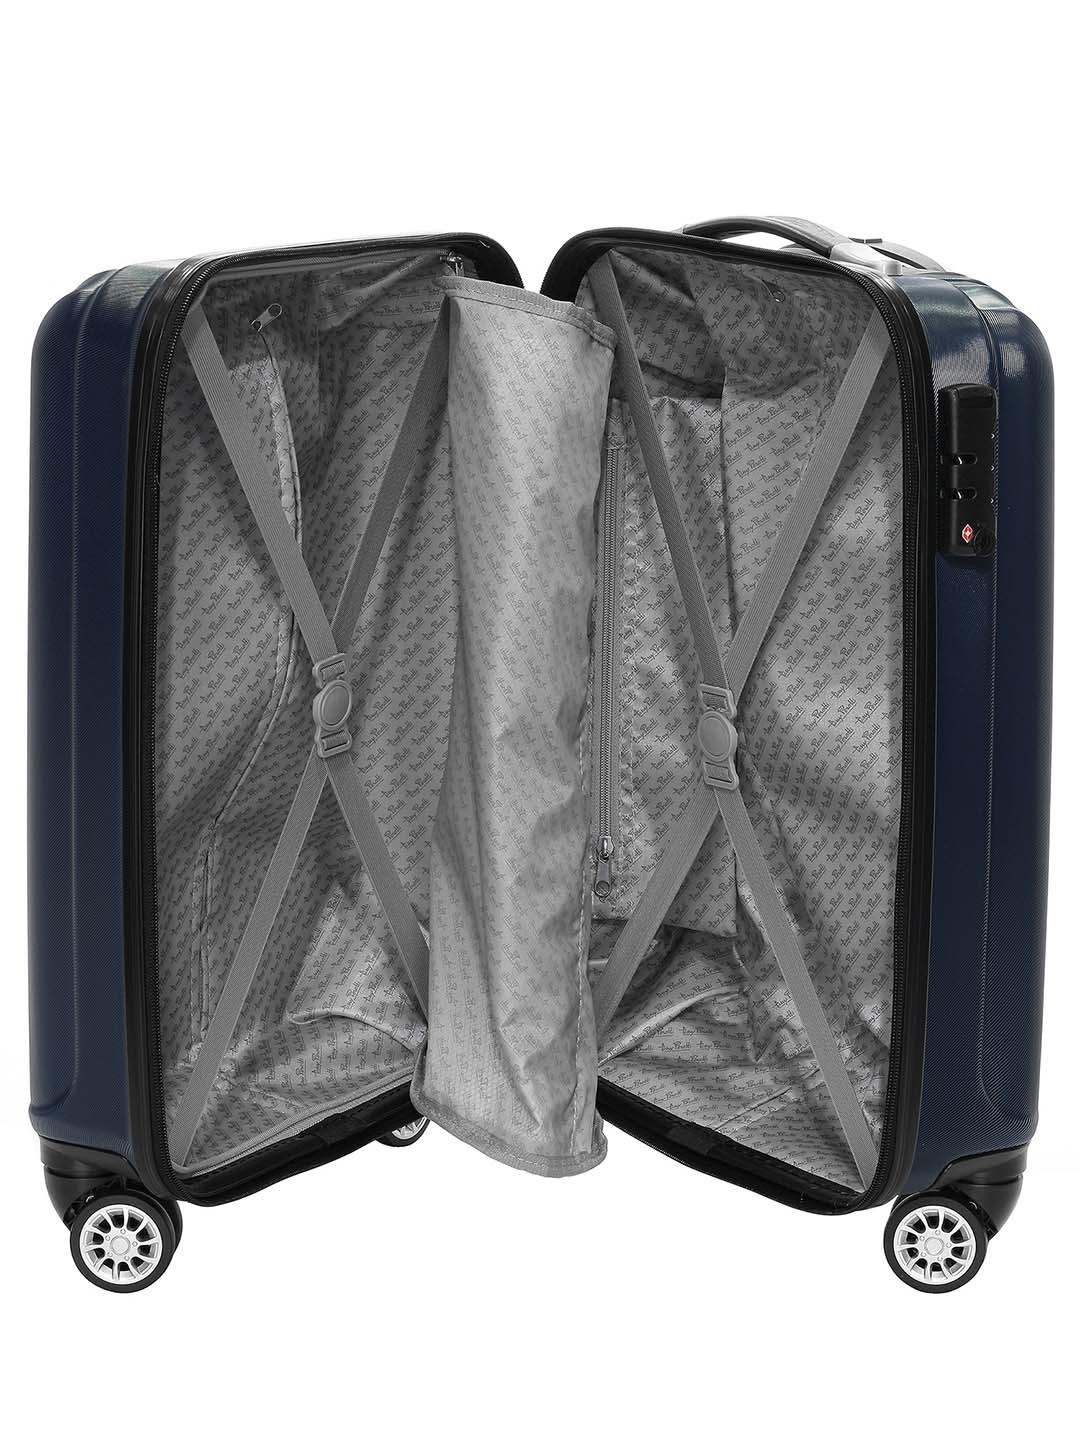 Фото Маленький чемодан на колесах из рифленого ABS пластика синего цвета Чемоданы